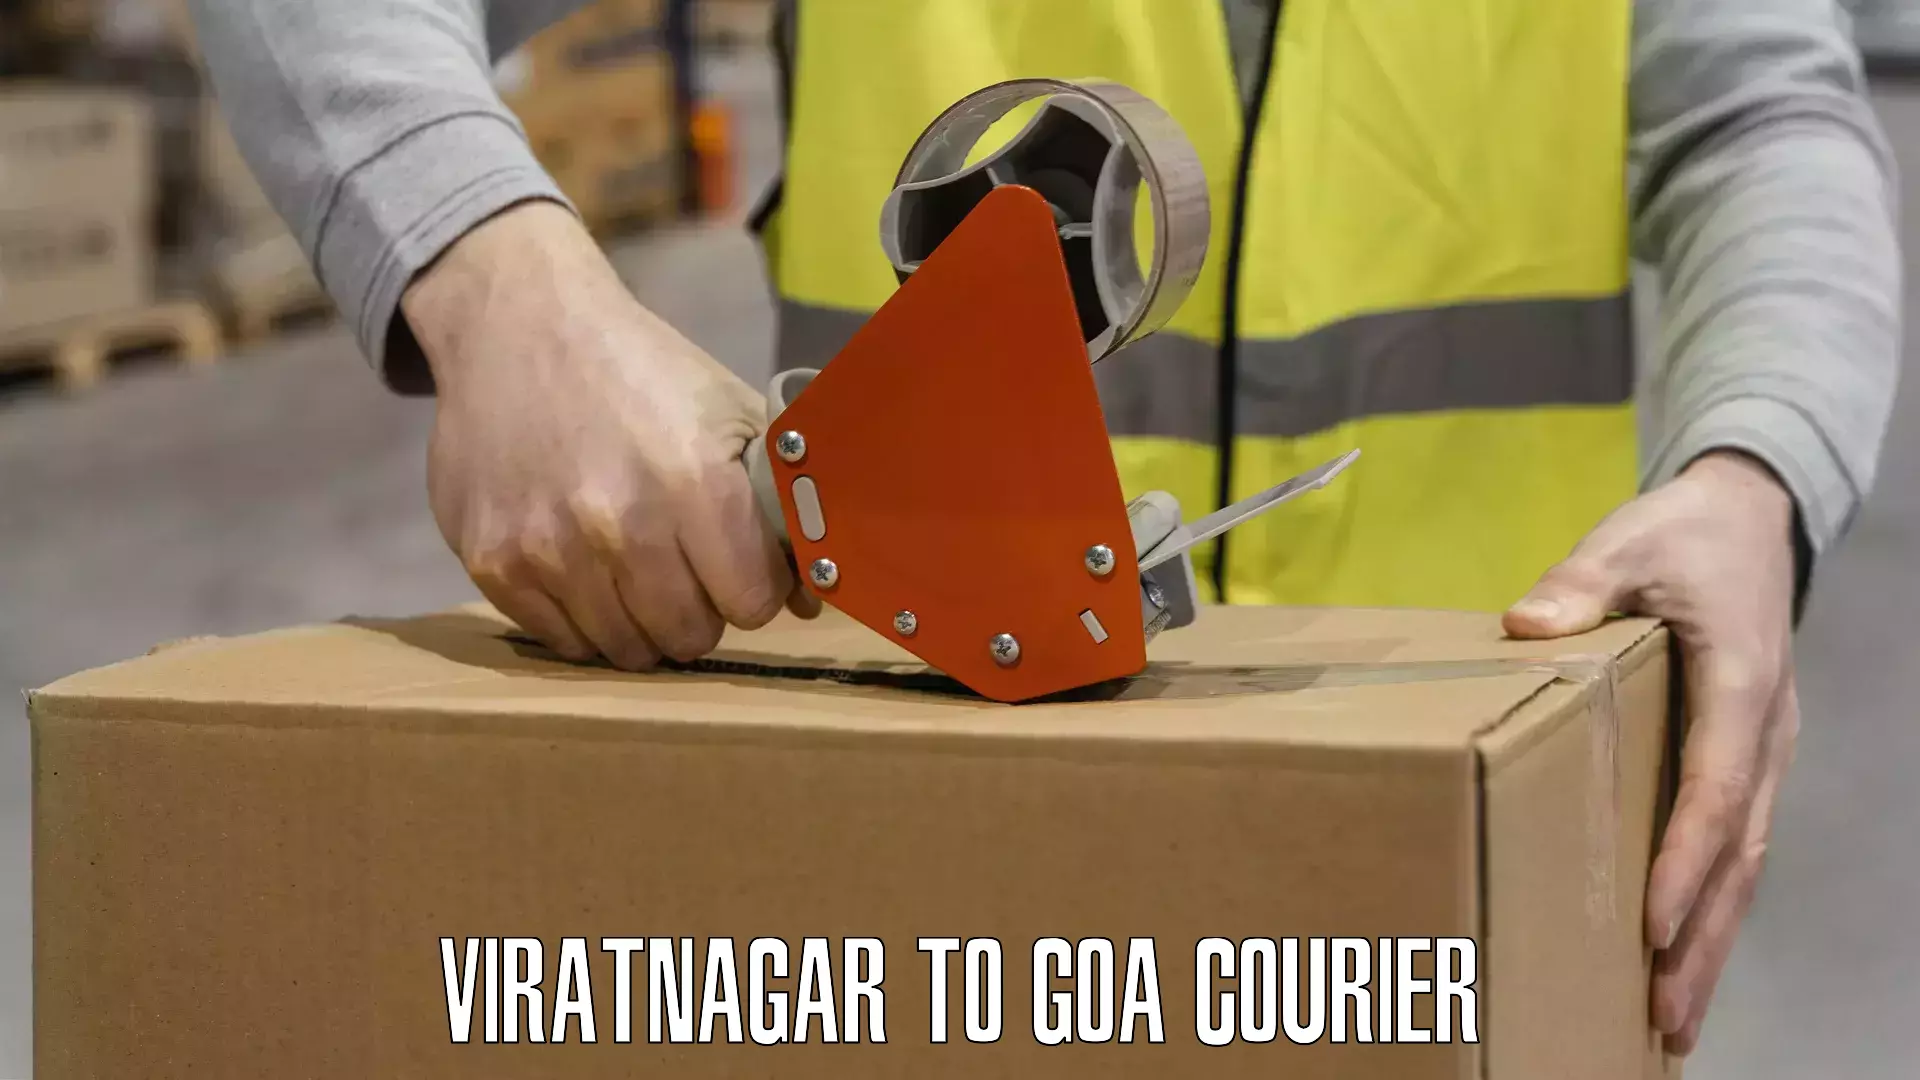 Cargo courier service Viratnagar to Bardez